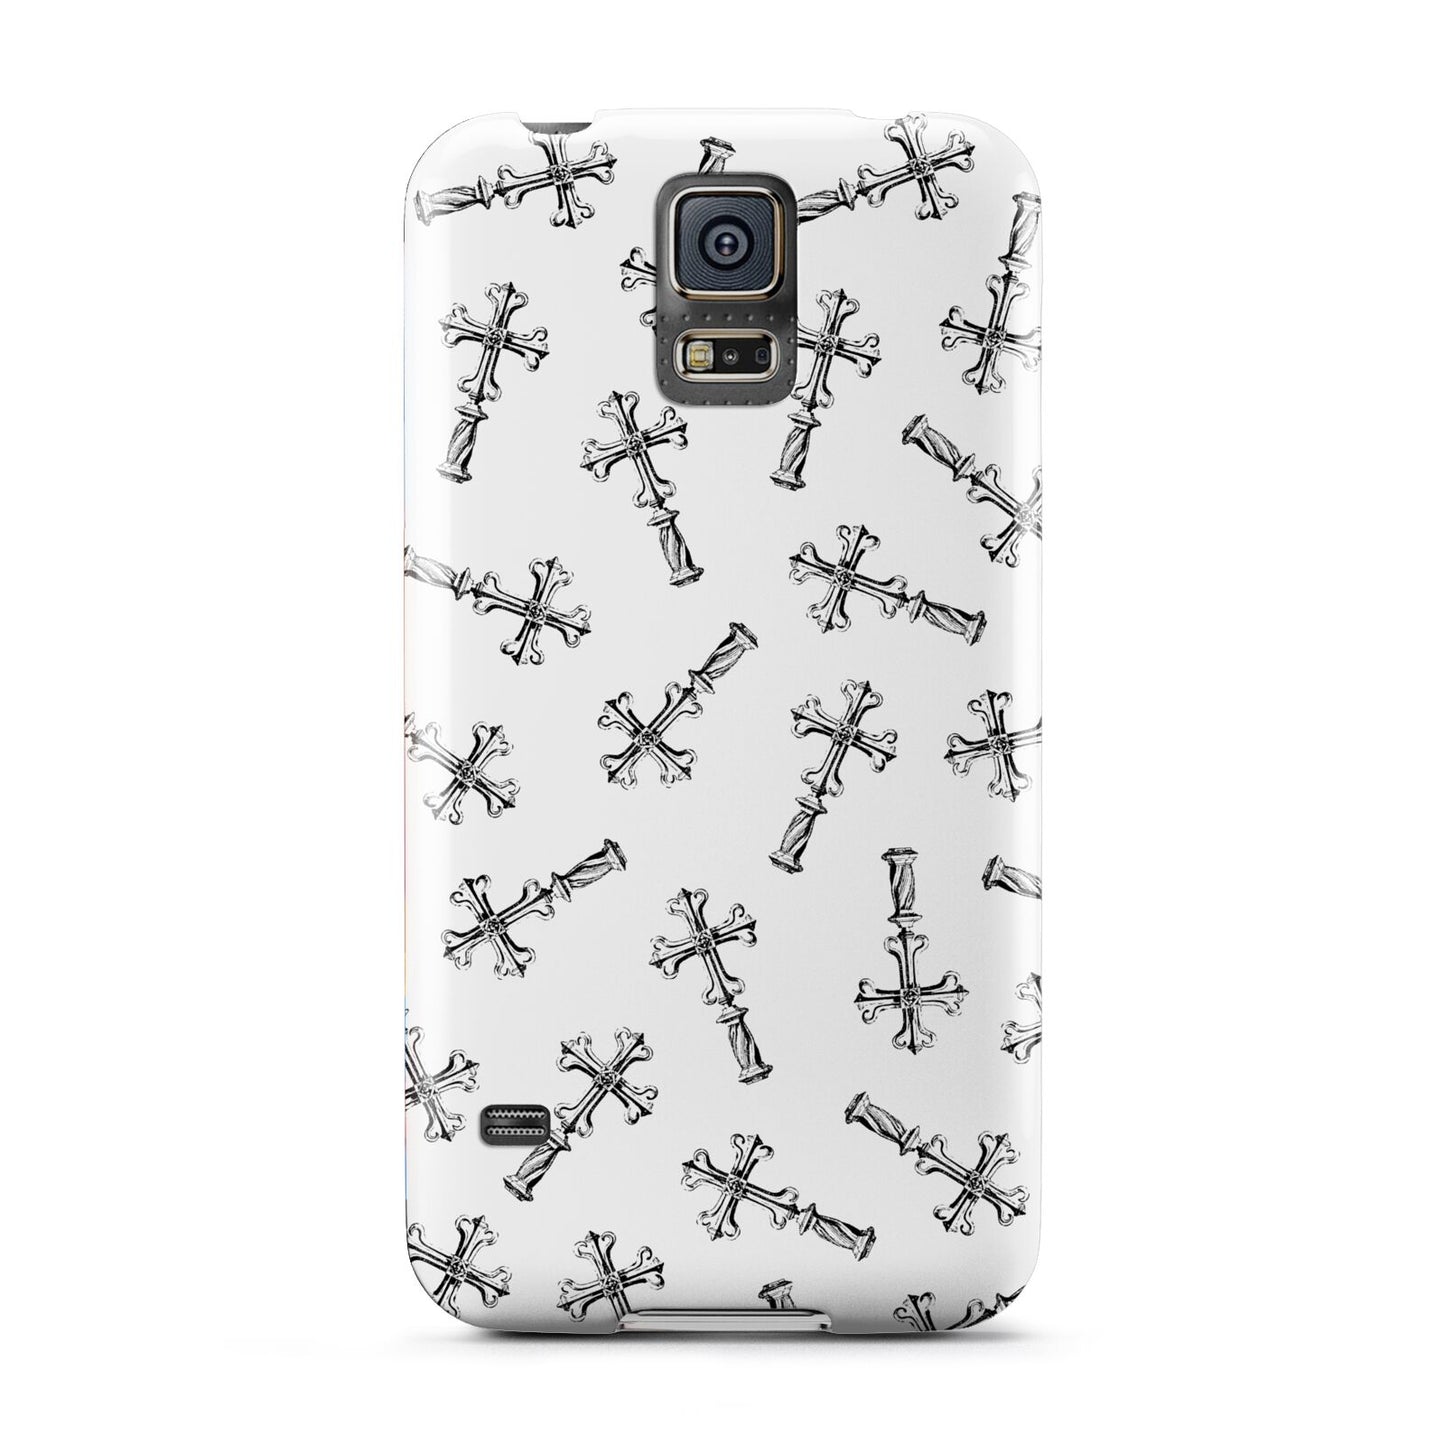 Monochrome Crosses Samsung Galaxy S5 Case